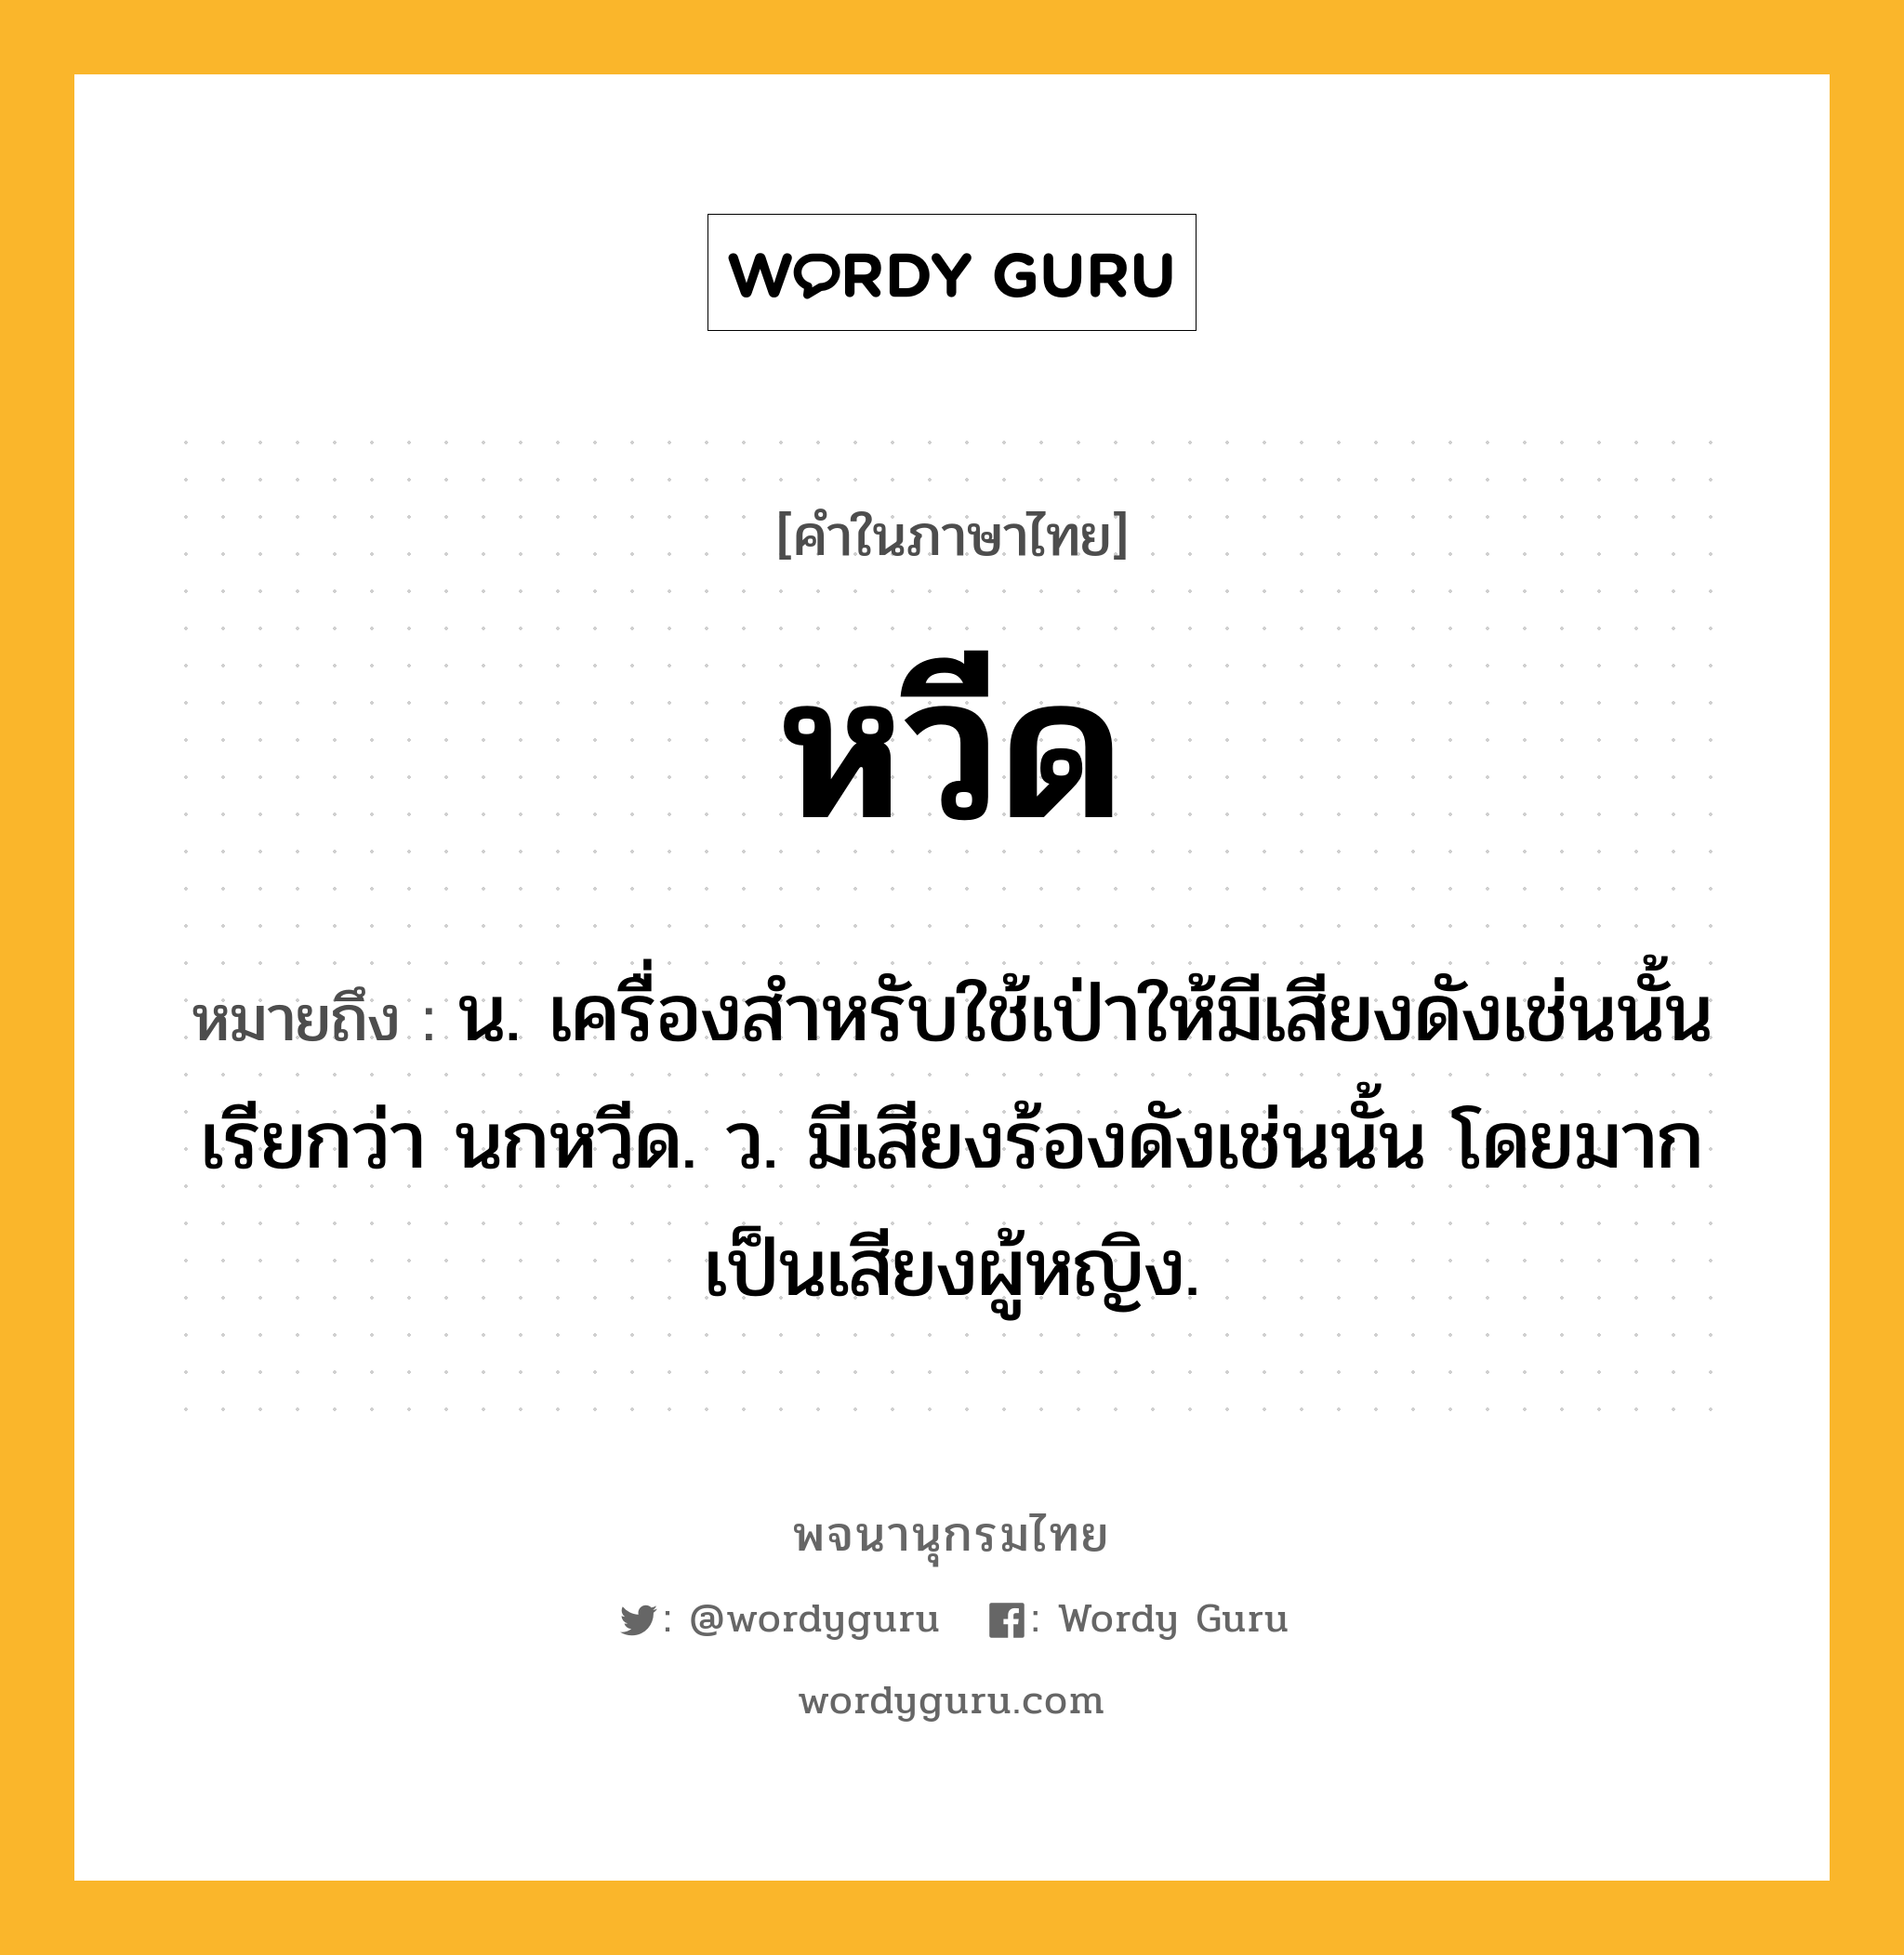 หวีด หมายถึงอะไร?, คำในภาษาไทย หวีด หมายถึง น. เครื่องสําหรับใช้เป่าให้มีเสียงดังเช่นนั้น เรียกว่า นกหวีด. ว. มีเสียงร้องดังเช่นนั้น โดยมากเป็นเสียงผู้หญิง.